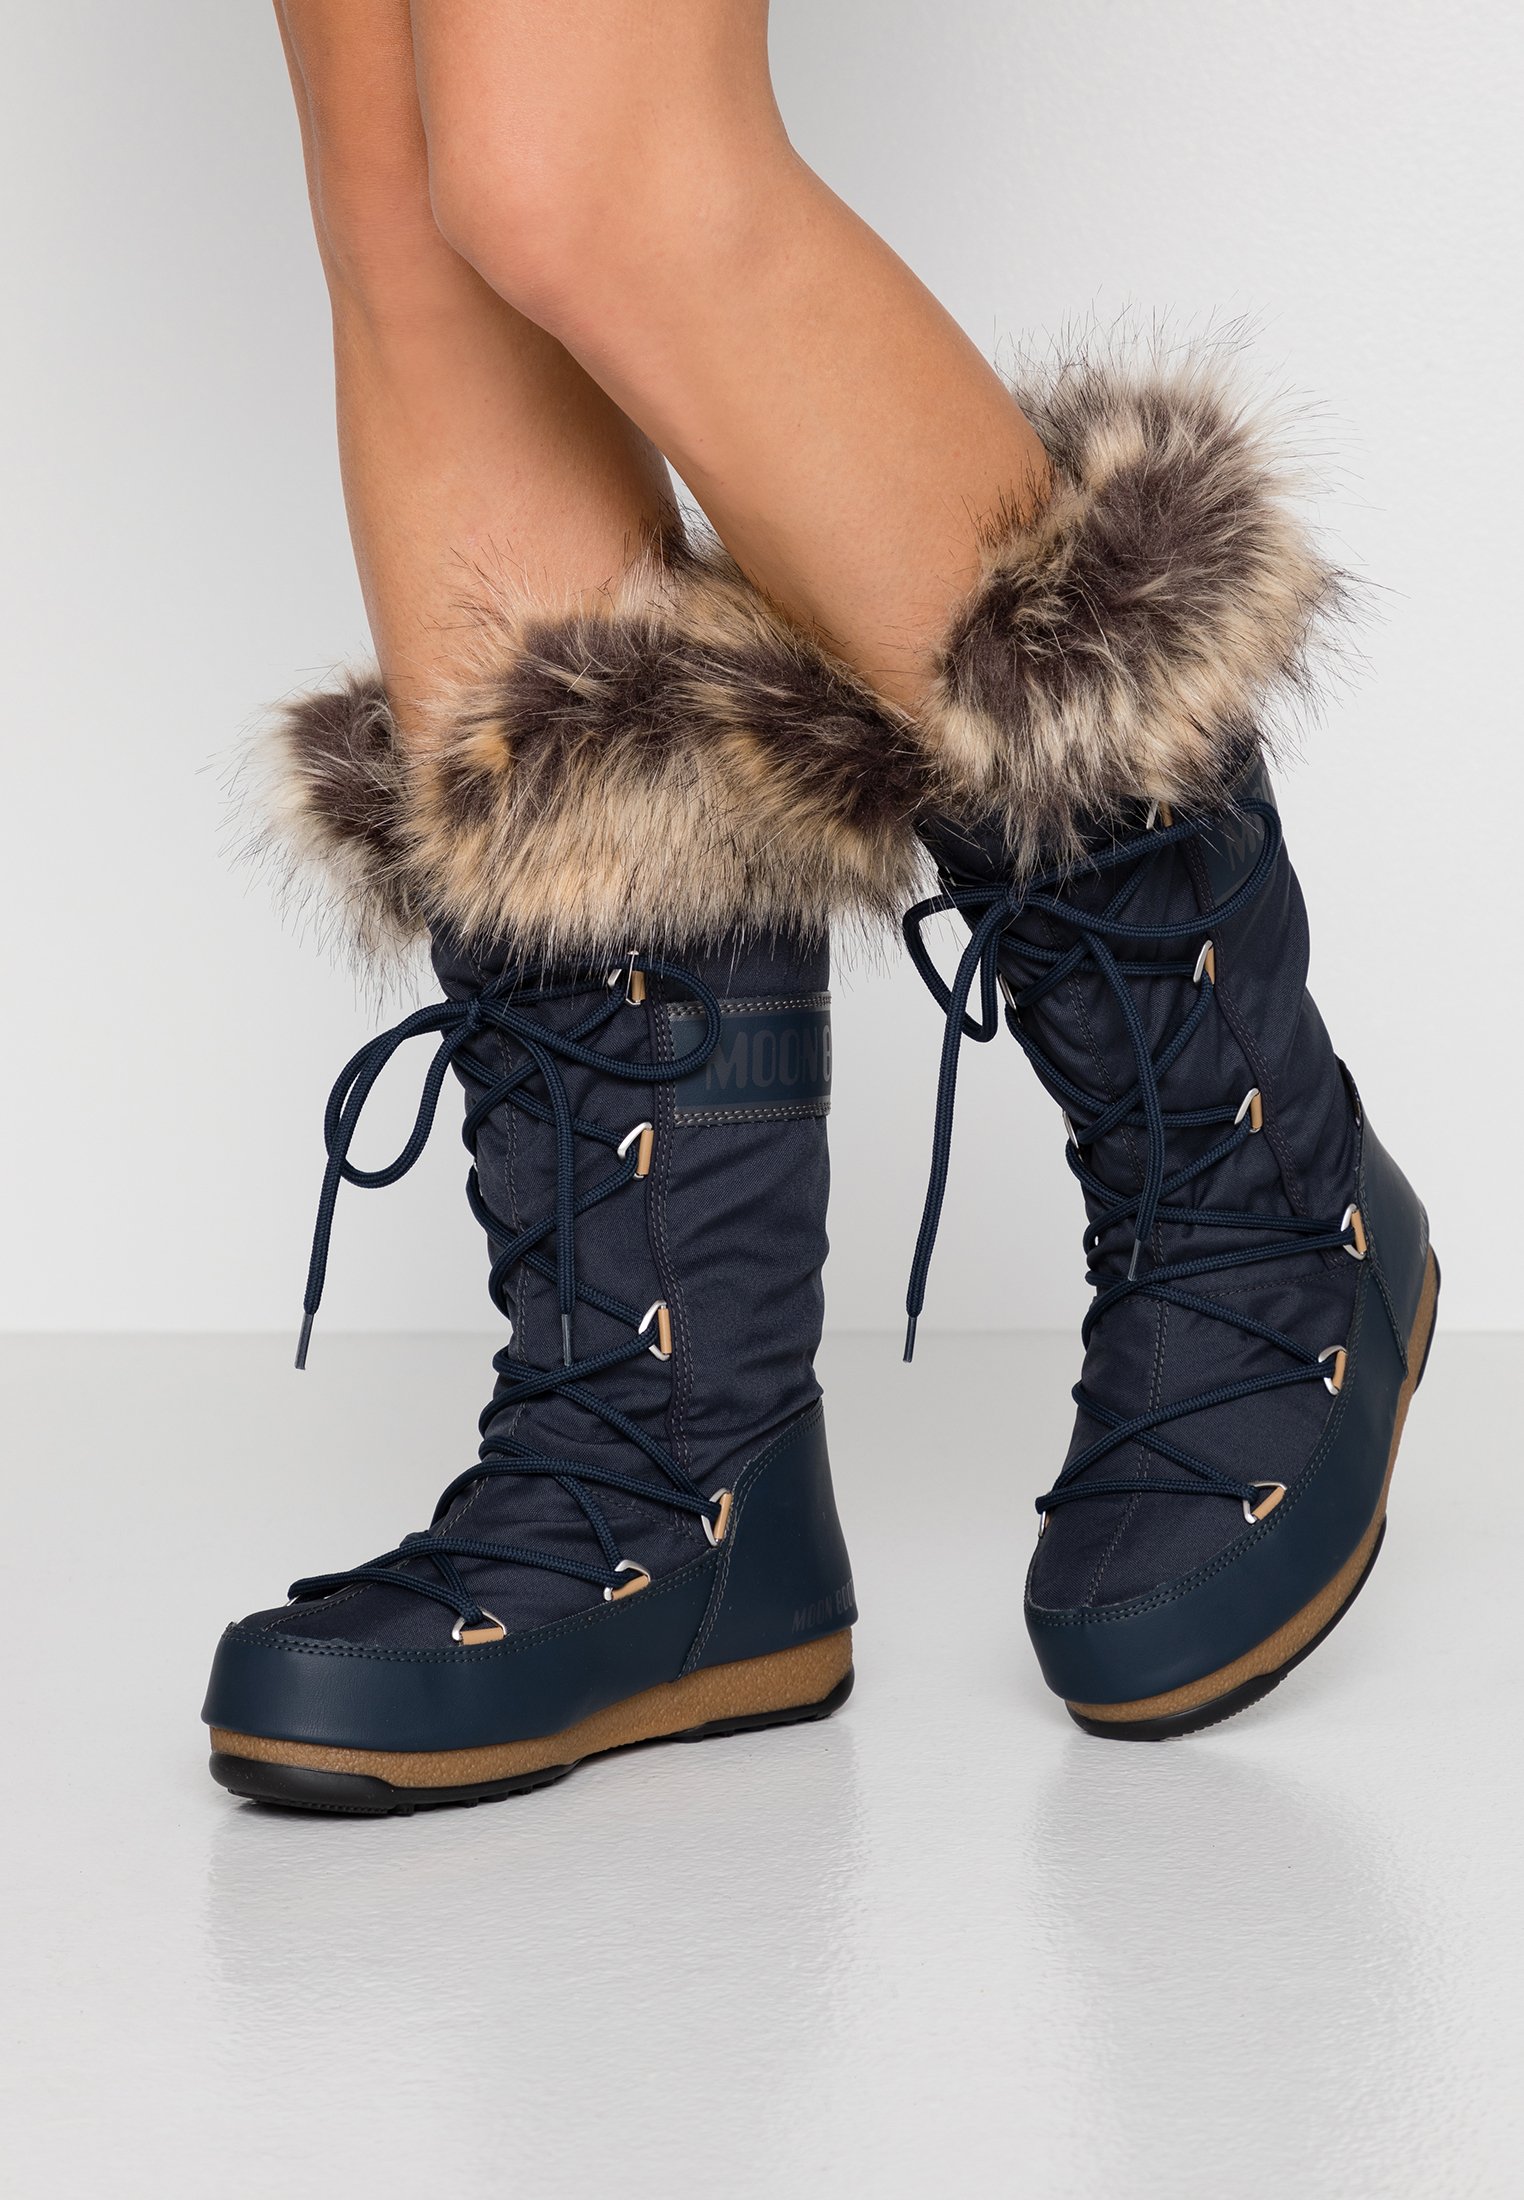 Fotos: Estas son las botas de nieve baratas (y muy bonitas) que